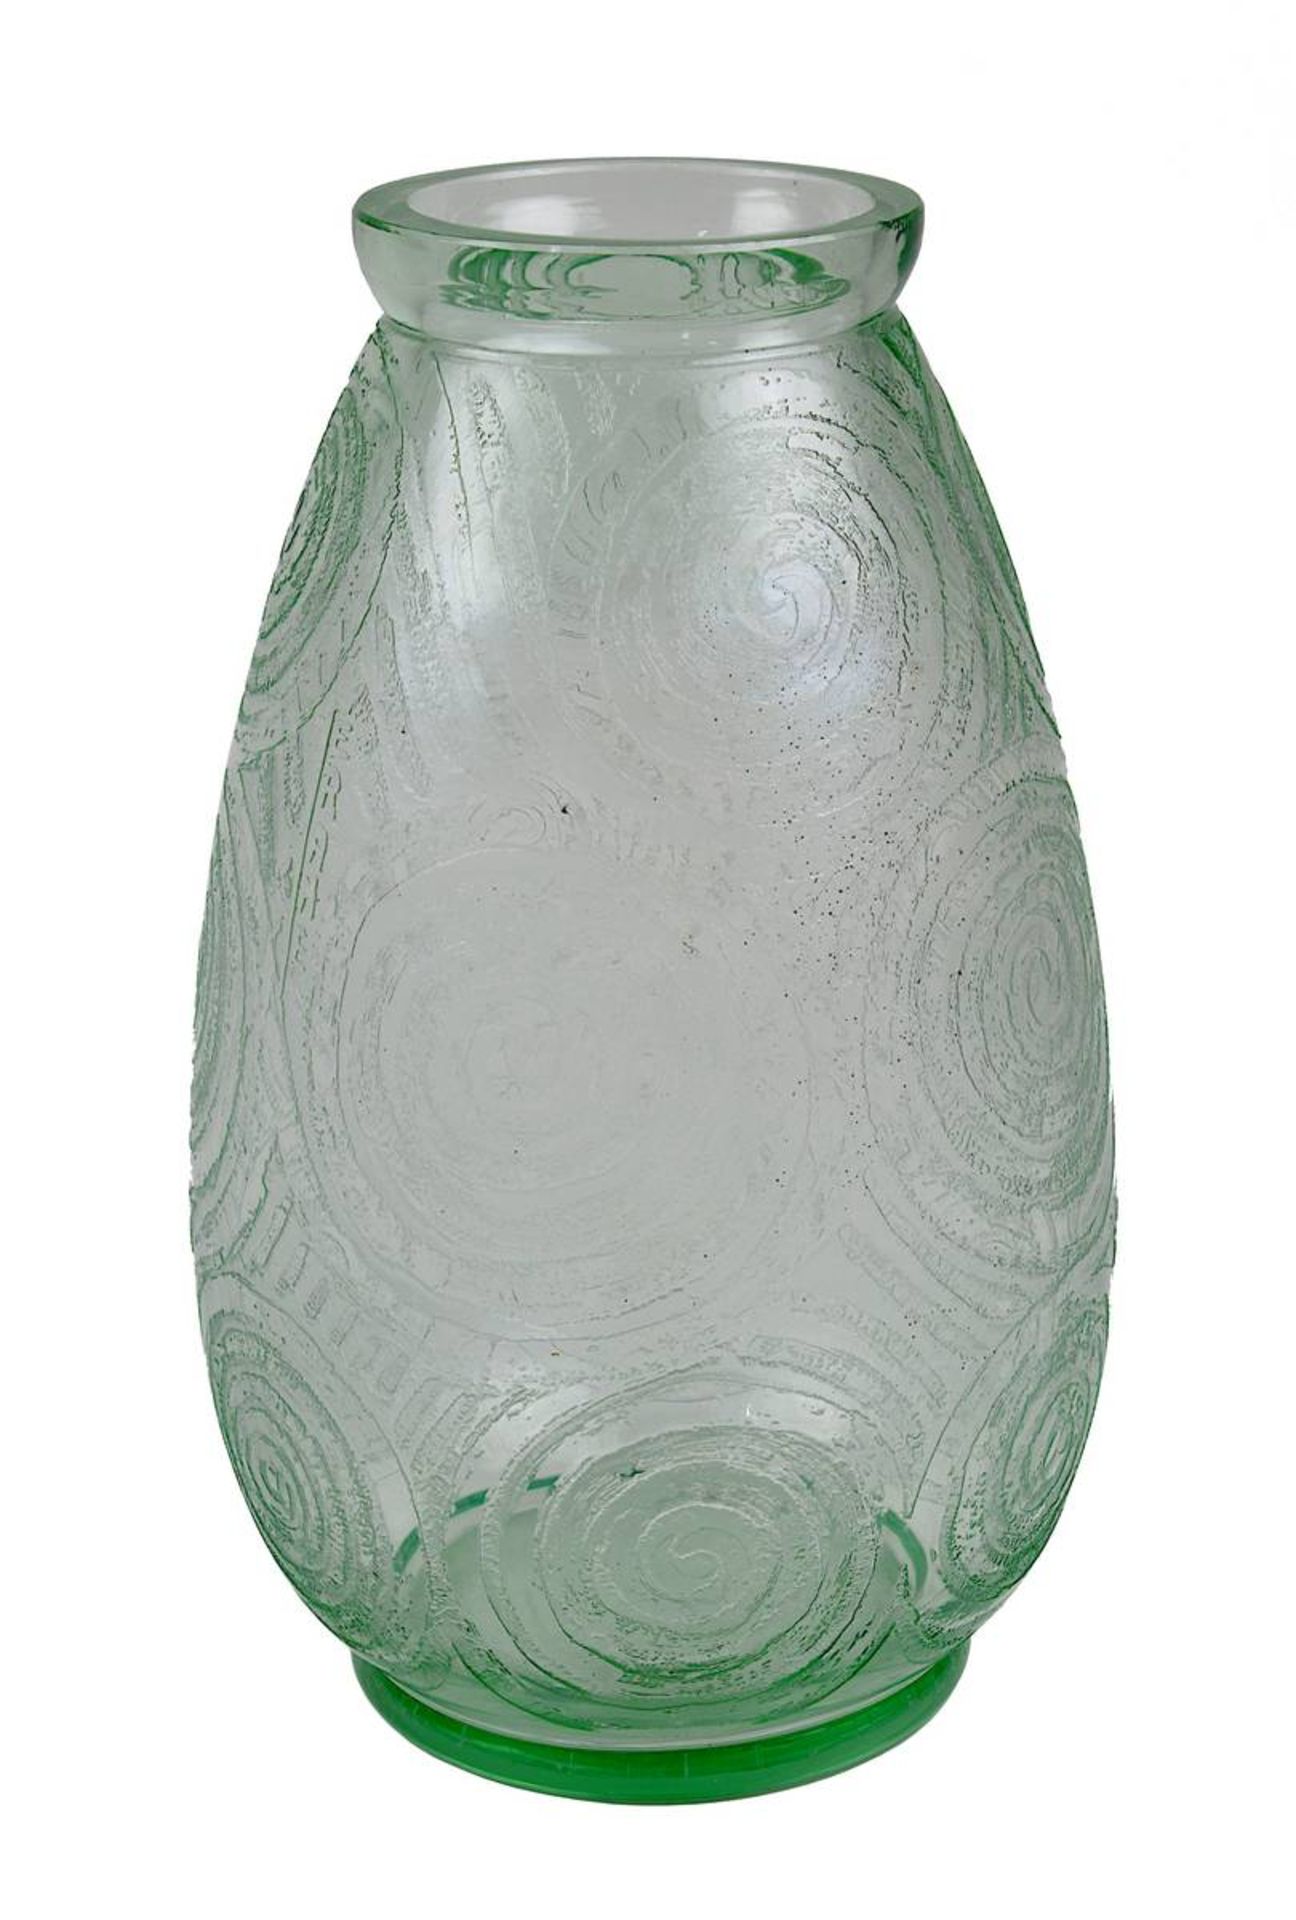 Ferame Art Déco-Glasvase mit Ätzdekor, Frankreich um 1930, leicht grün durchgefärbtes Glas,